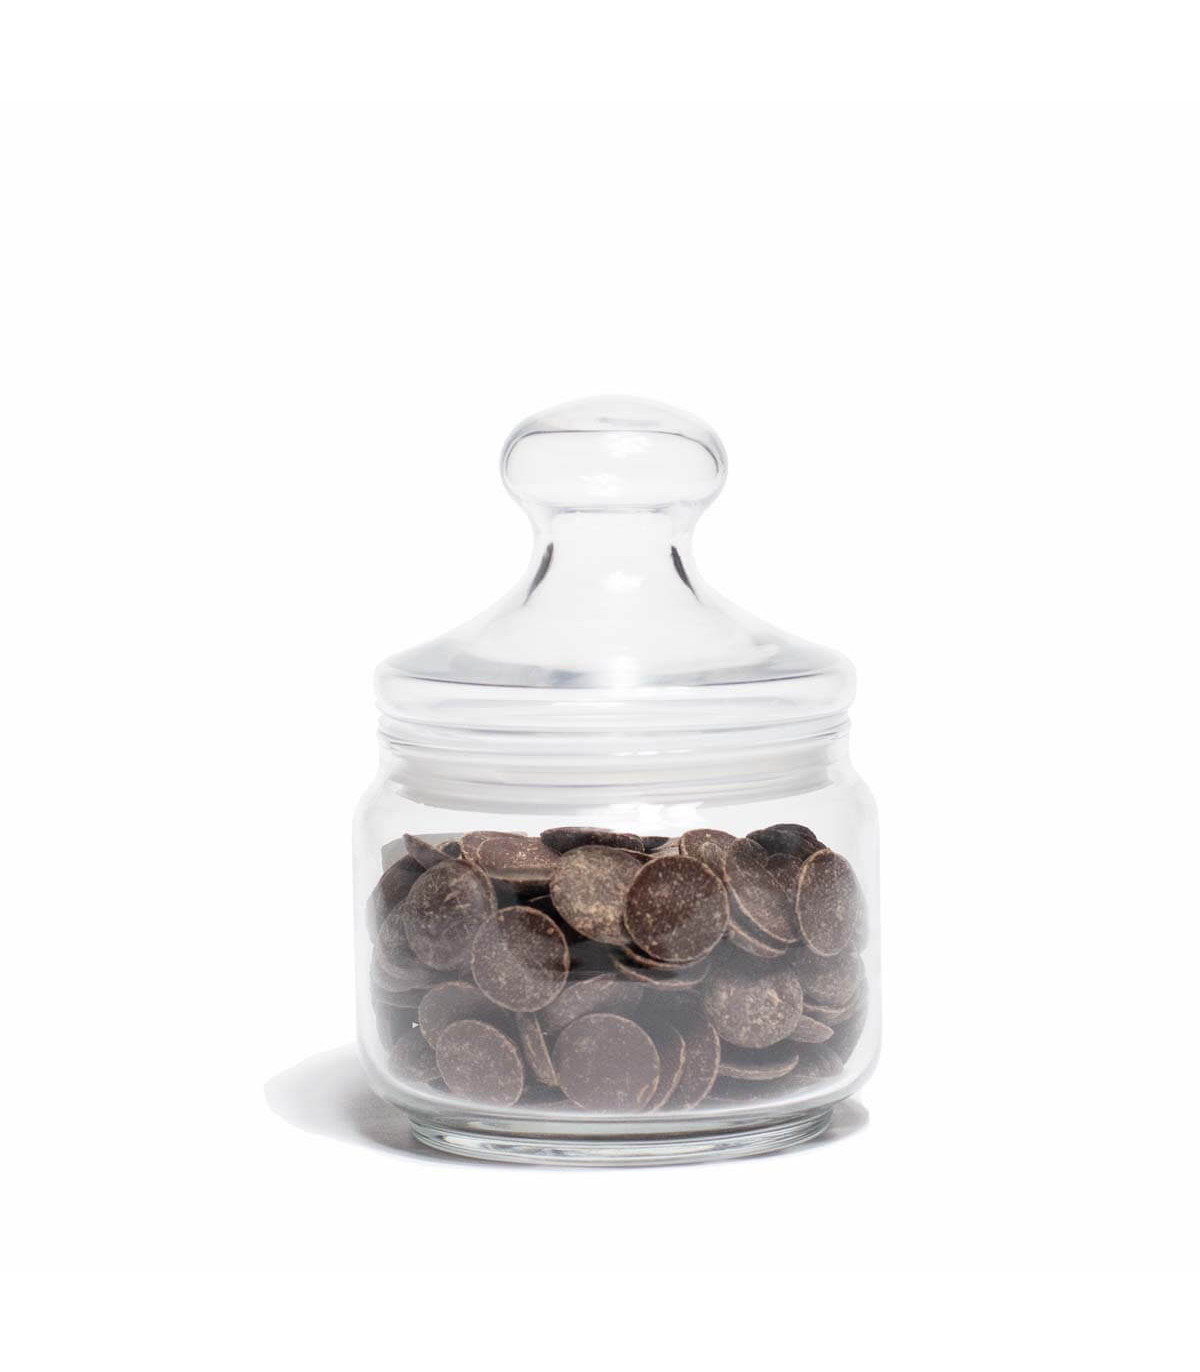 Small Cookie Jar 0,5L, Small Candy Jar 0,5L